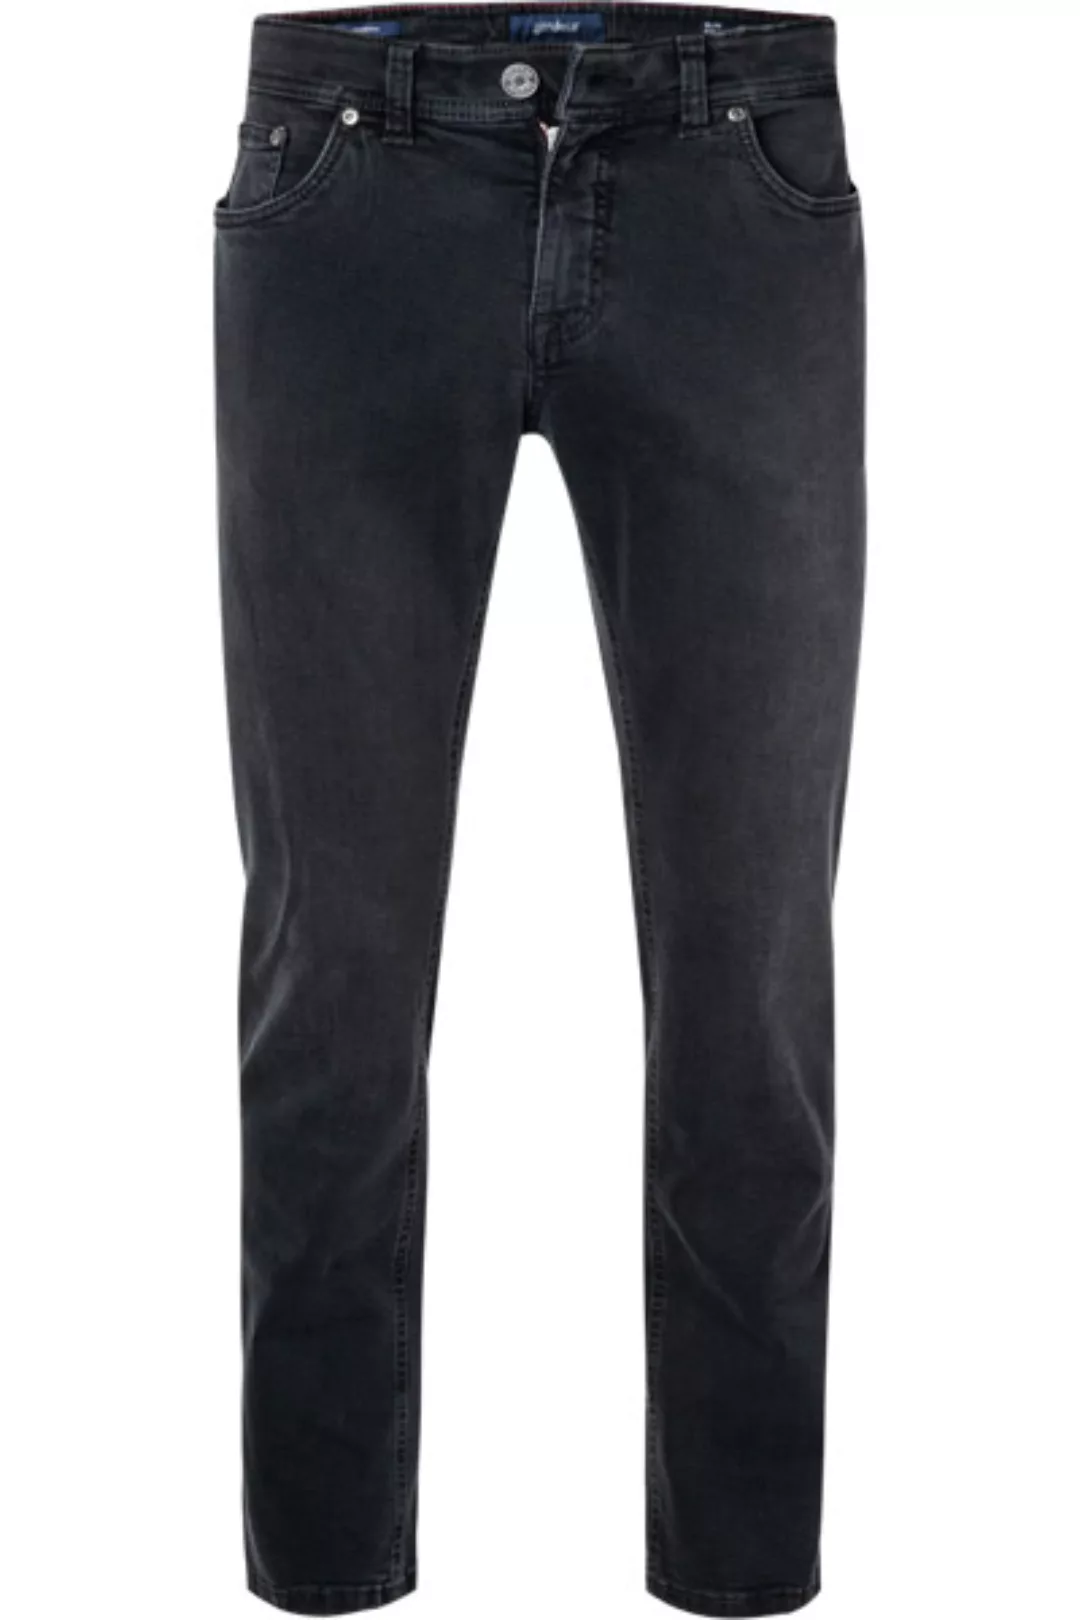 GARDEUR Jeans SANDRO/470731/199 günstig online kaufen